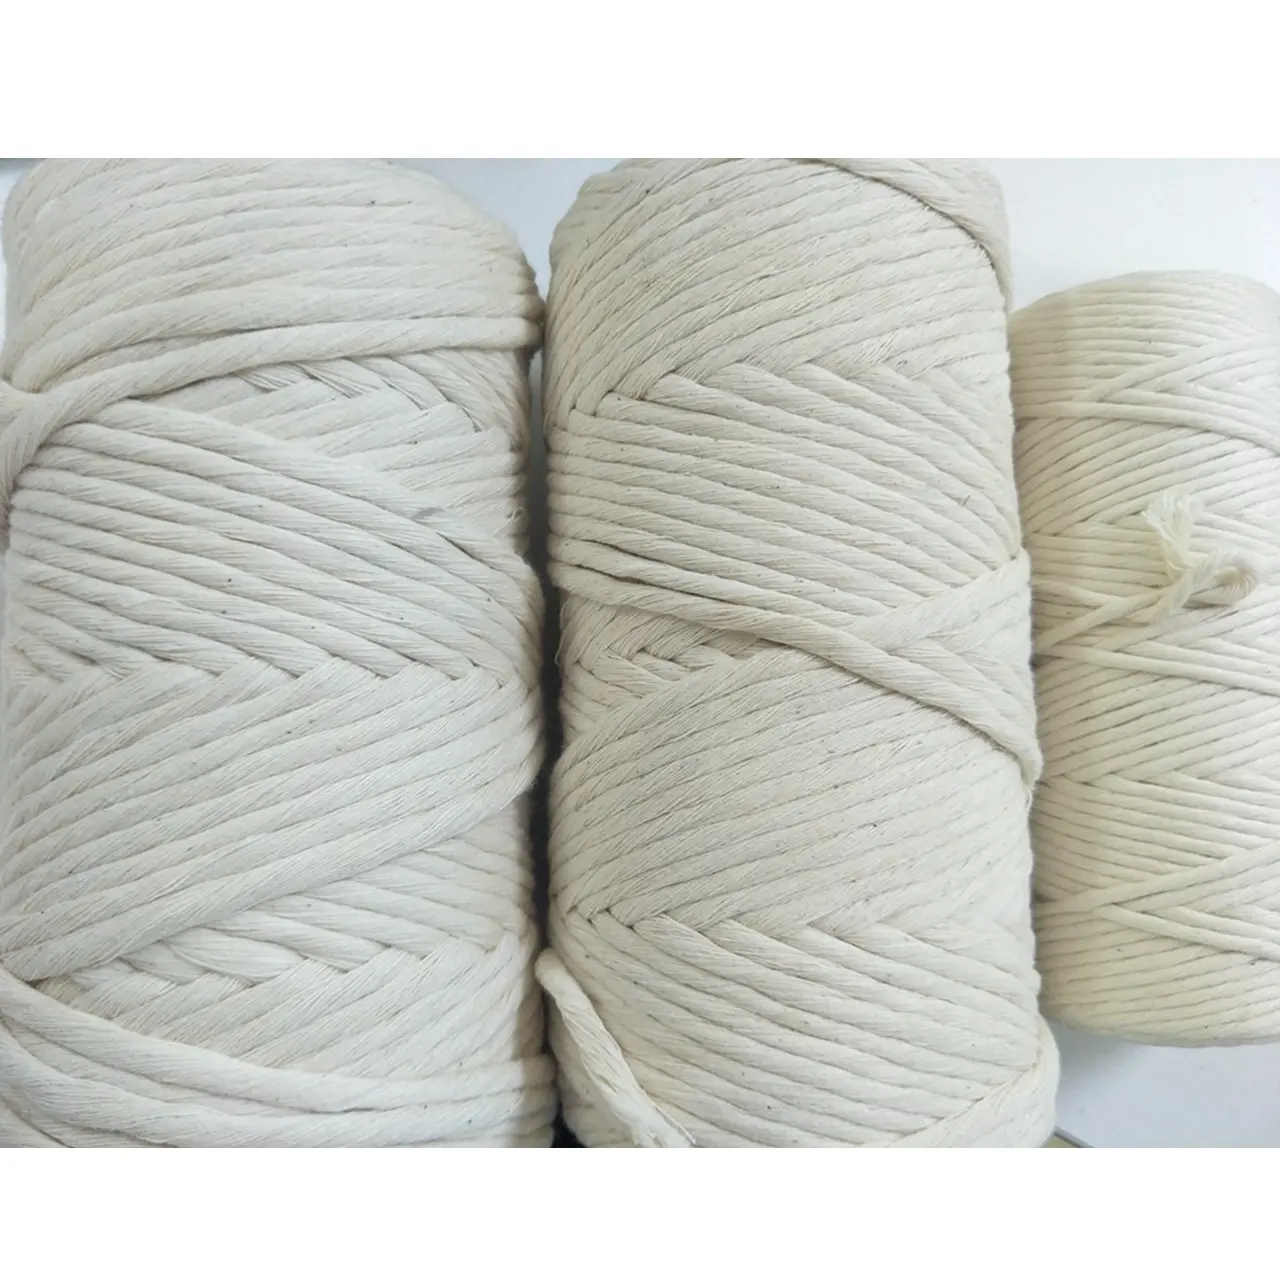 Cuerdas de algodón 100%, cuerda de algodón natural de 3mm, 4mm y 5mm, cuerda de macramé de una sola hebra